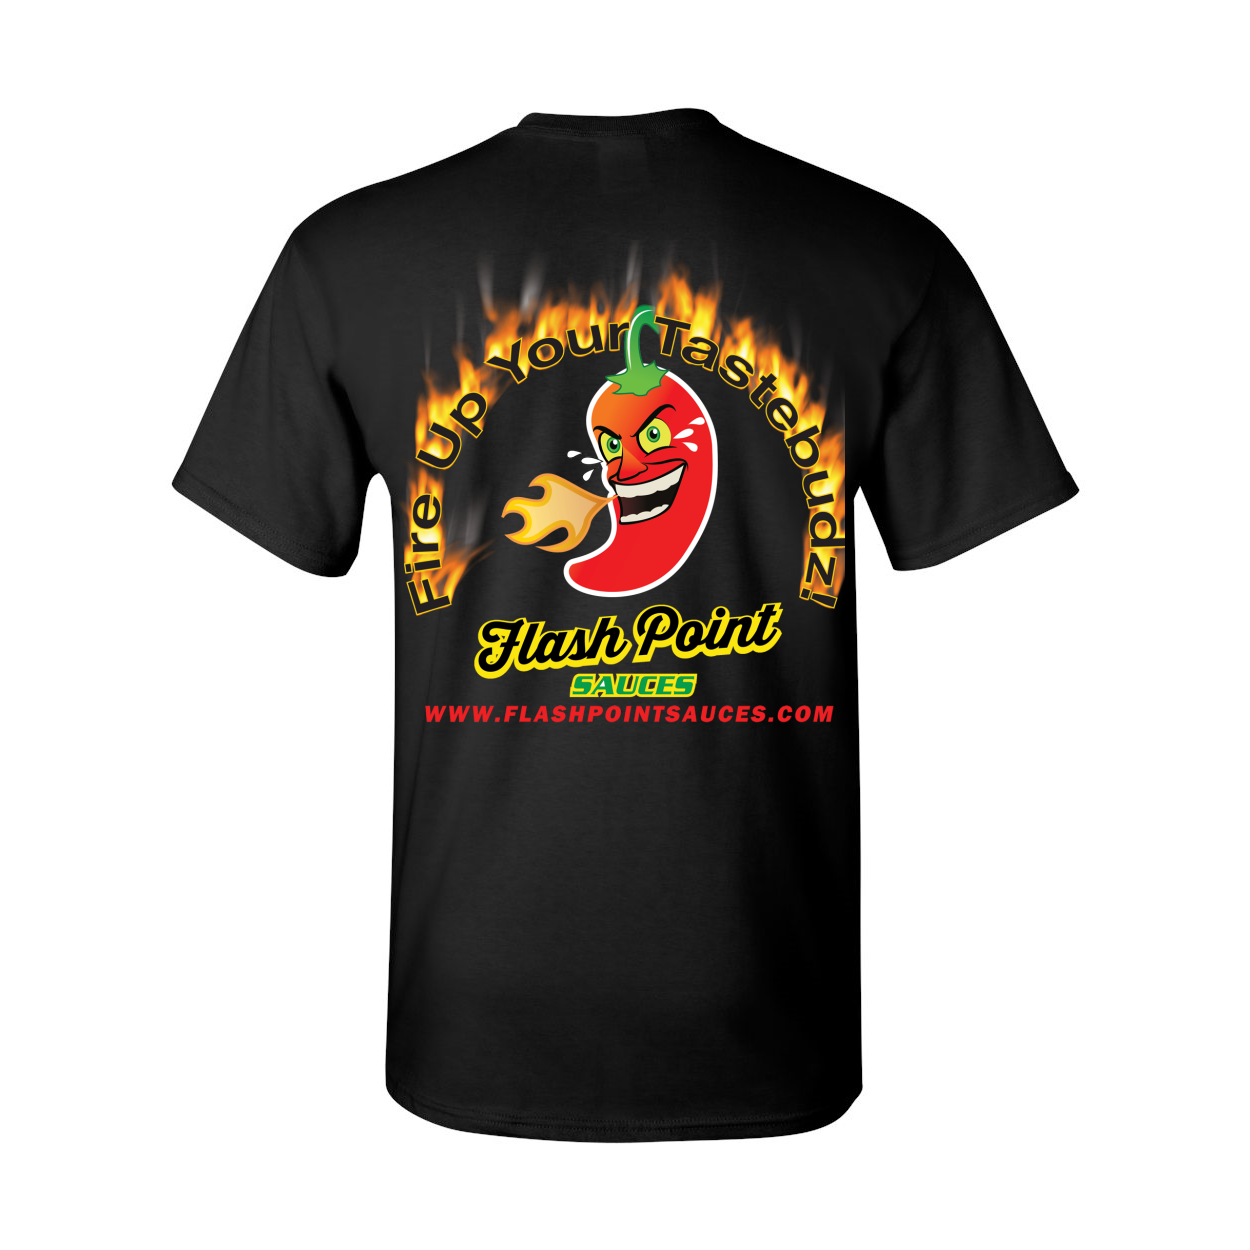 Fire Up Your Tastebudz Short Sleeve T-Shirt